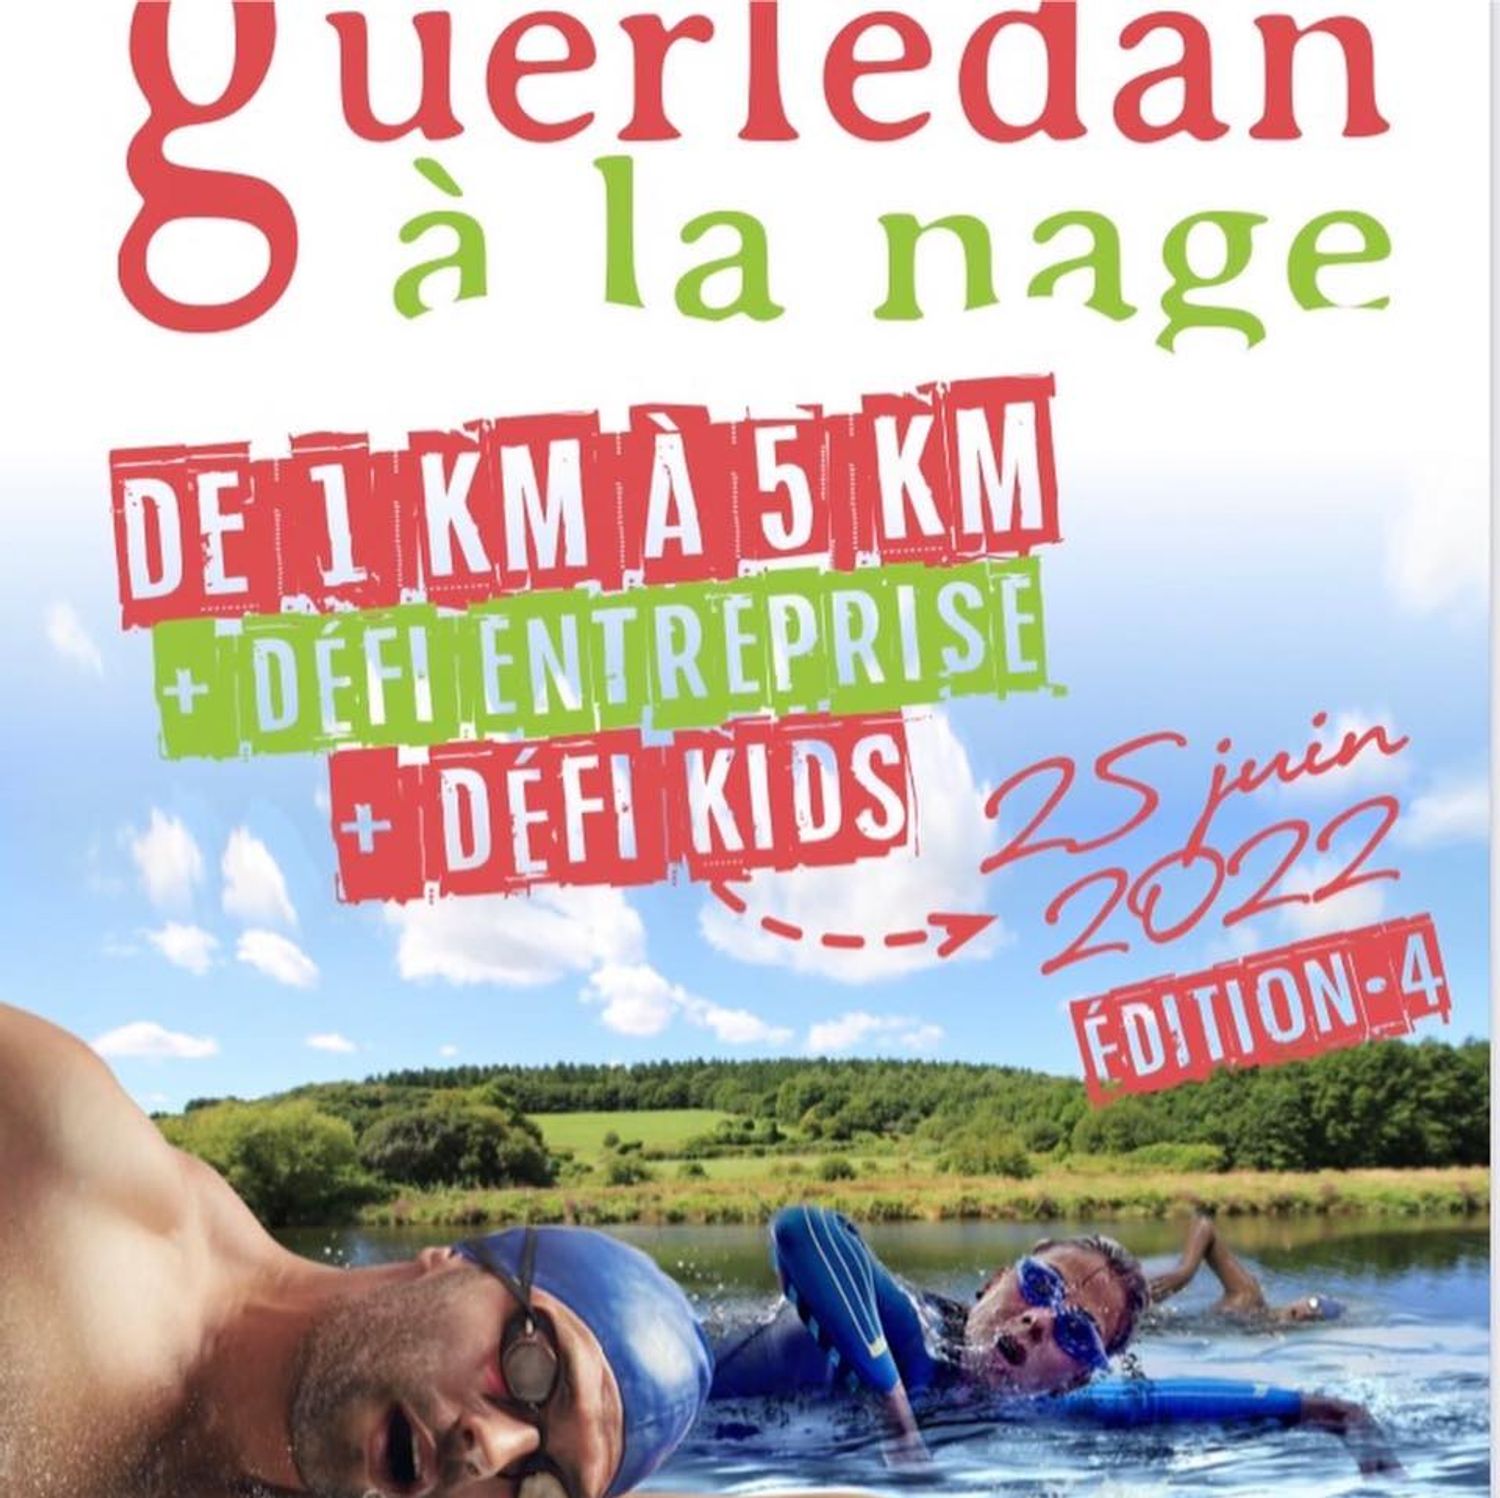 La 4ème édition de Guerlédan le 25 juin à la base de plein aire de Mûr de Bretagne.